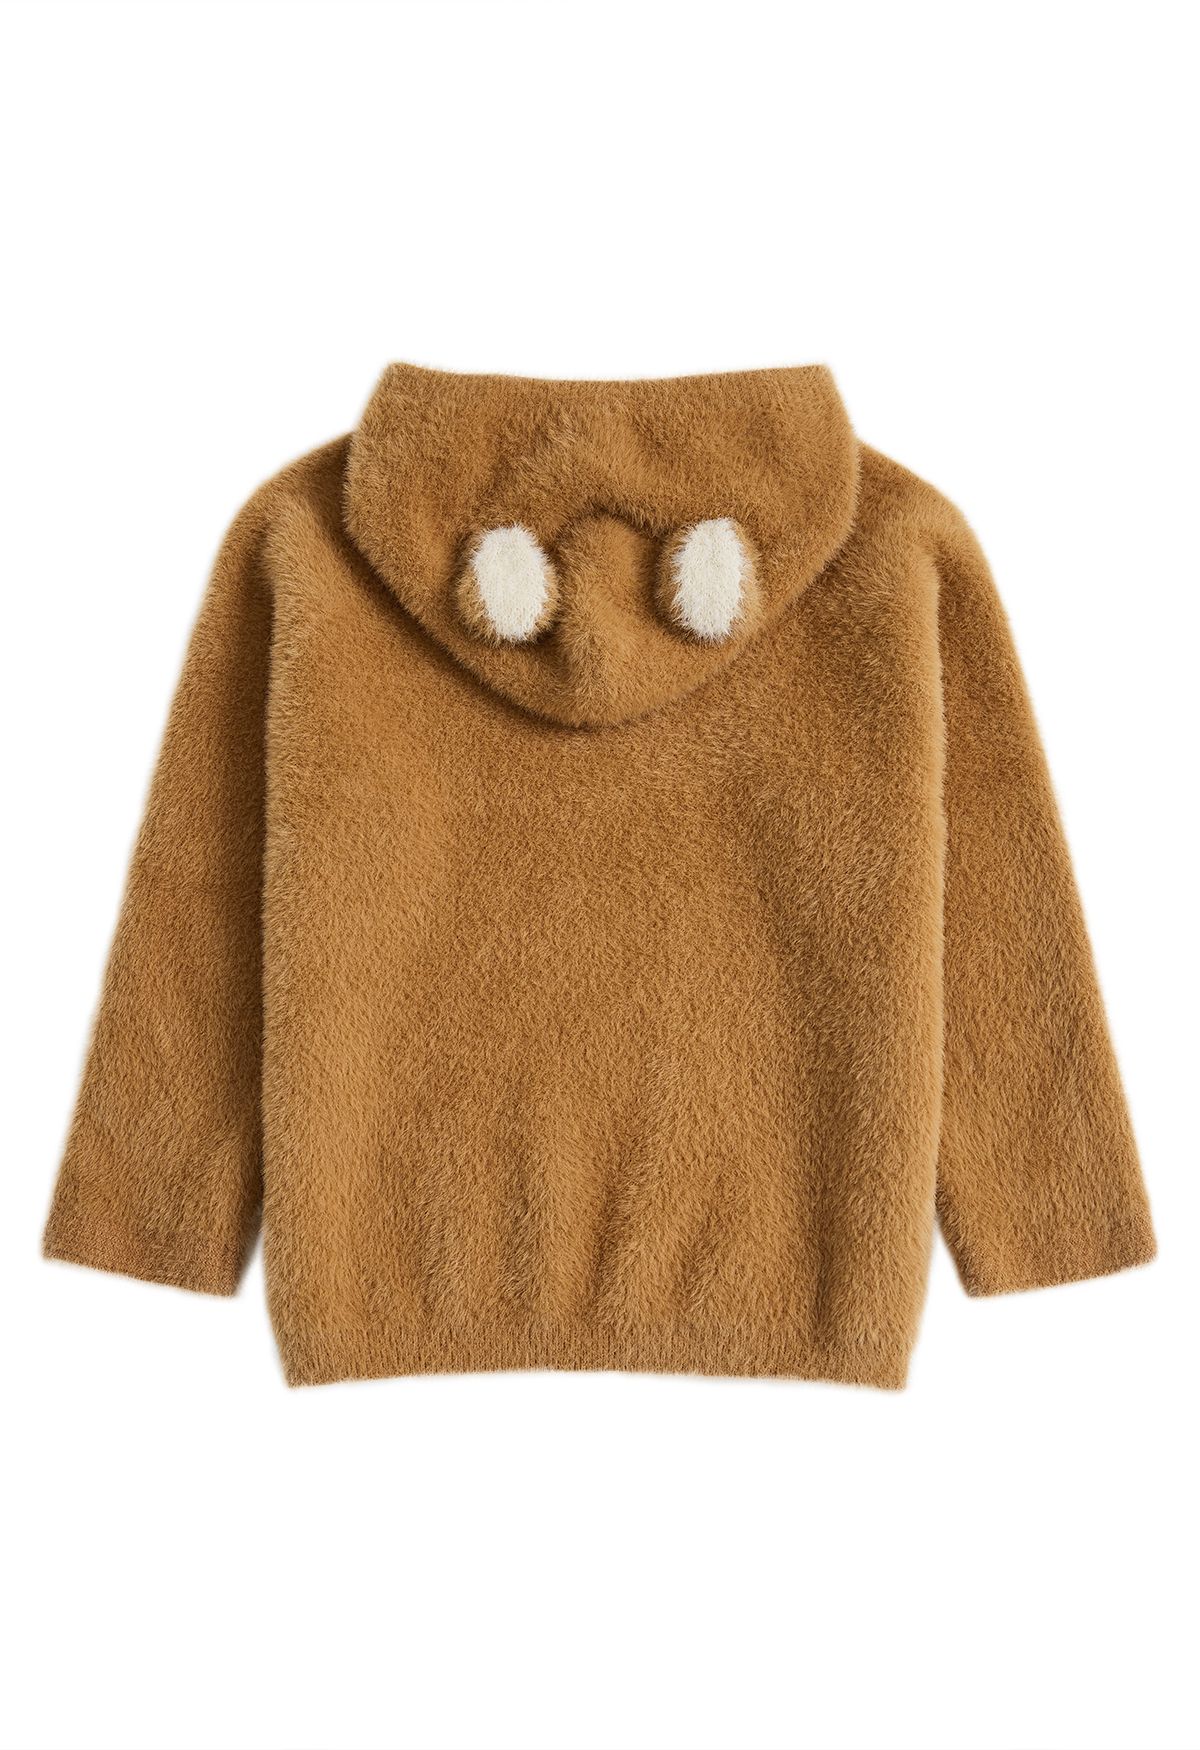 Cute Bear Fuzzy Knit Hooded Sweater in Tan For Kids